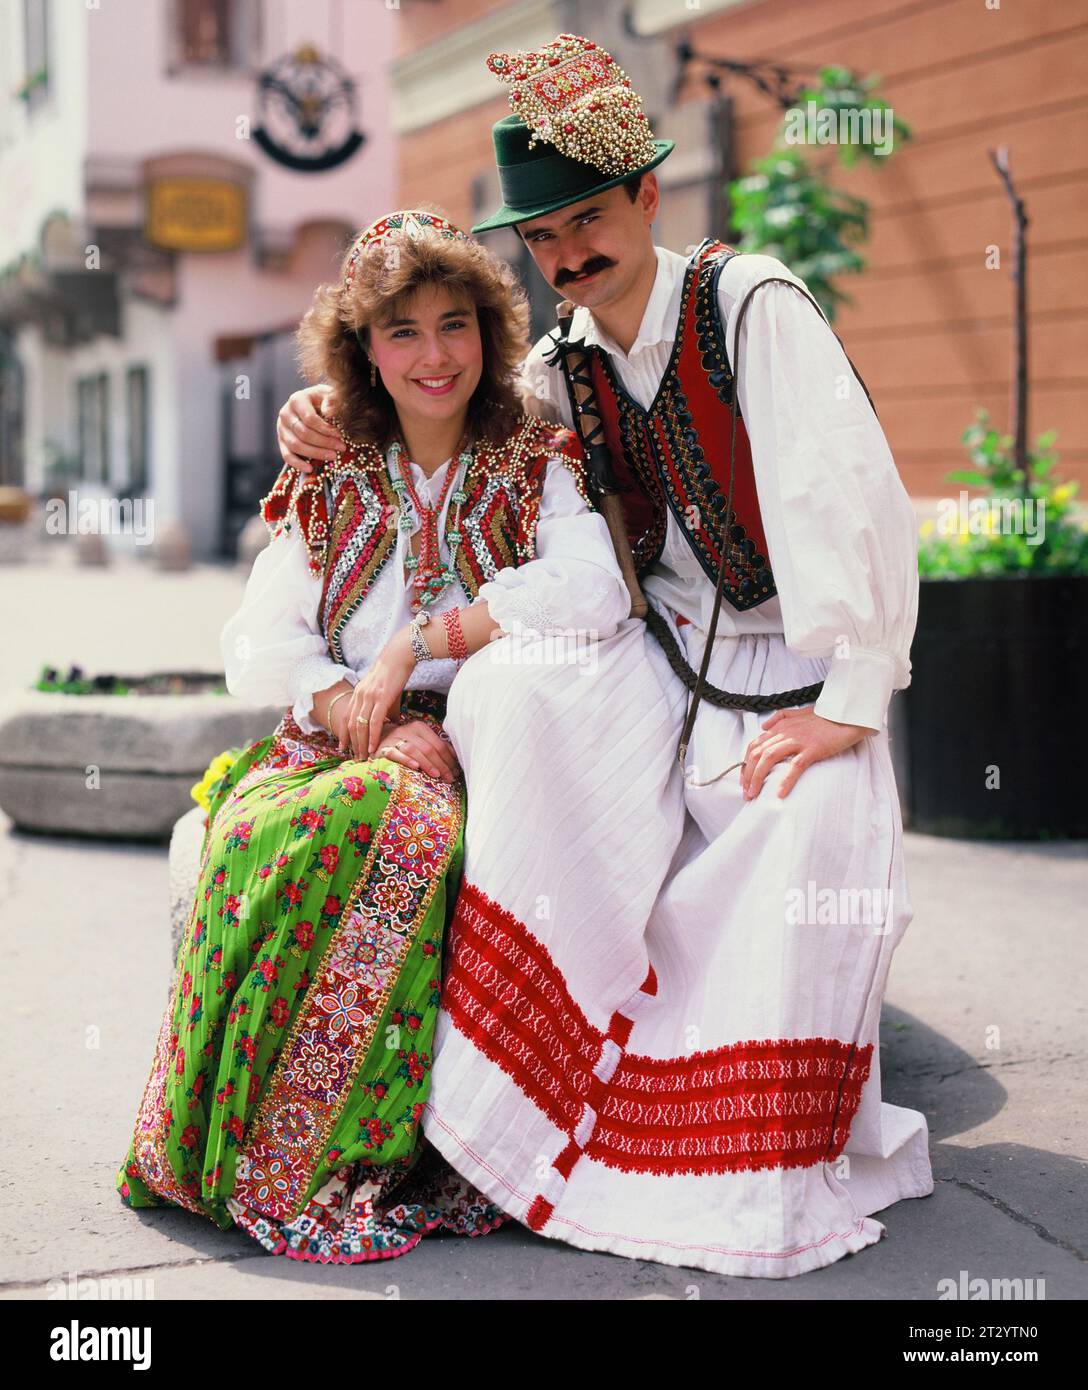 Carnaval du Danube. Couple local portant un costume traditionnel. Banque D'Images